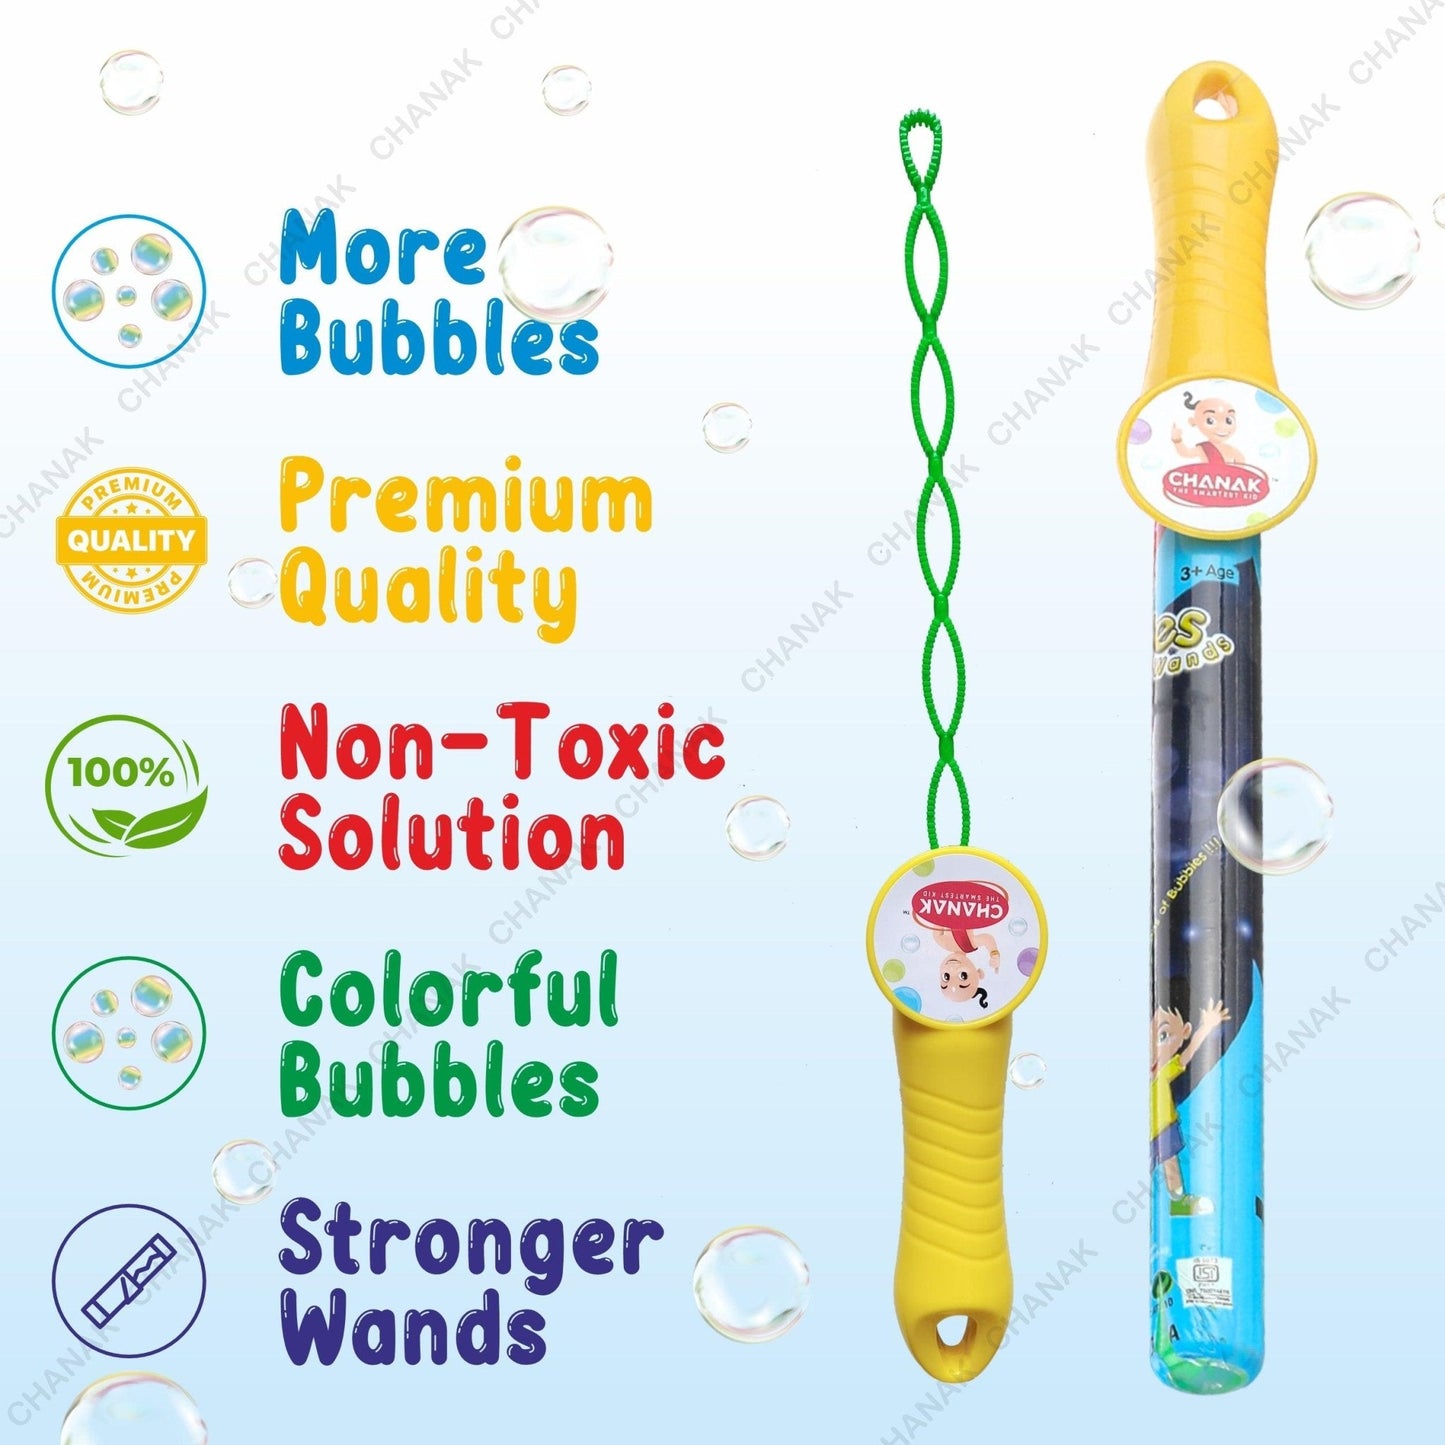 Chanak's Premium Bubble Wands for Kids - chanak